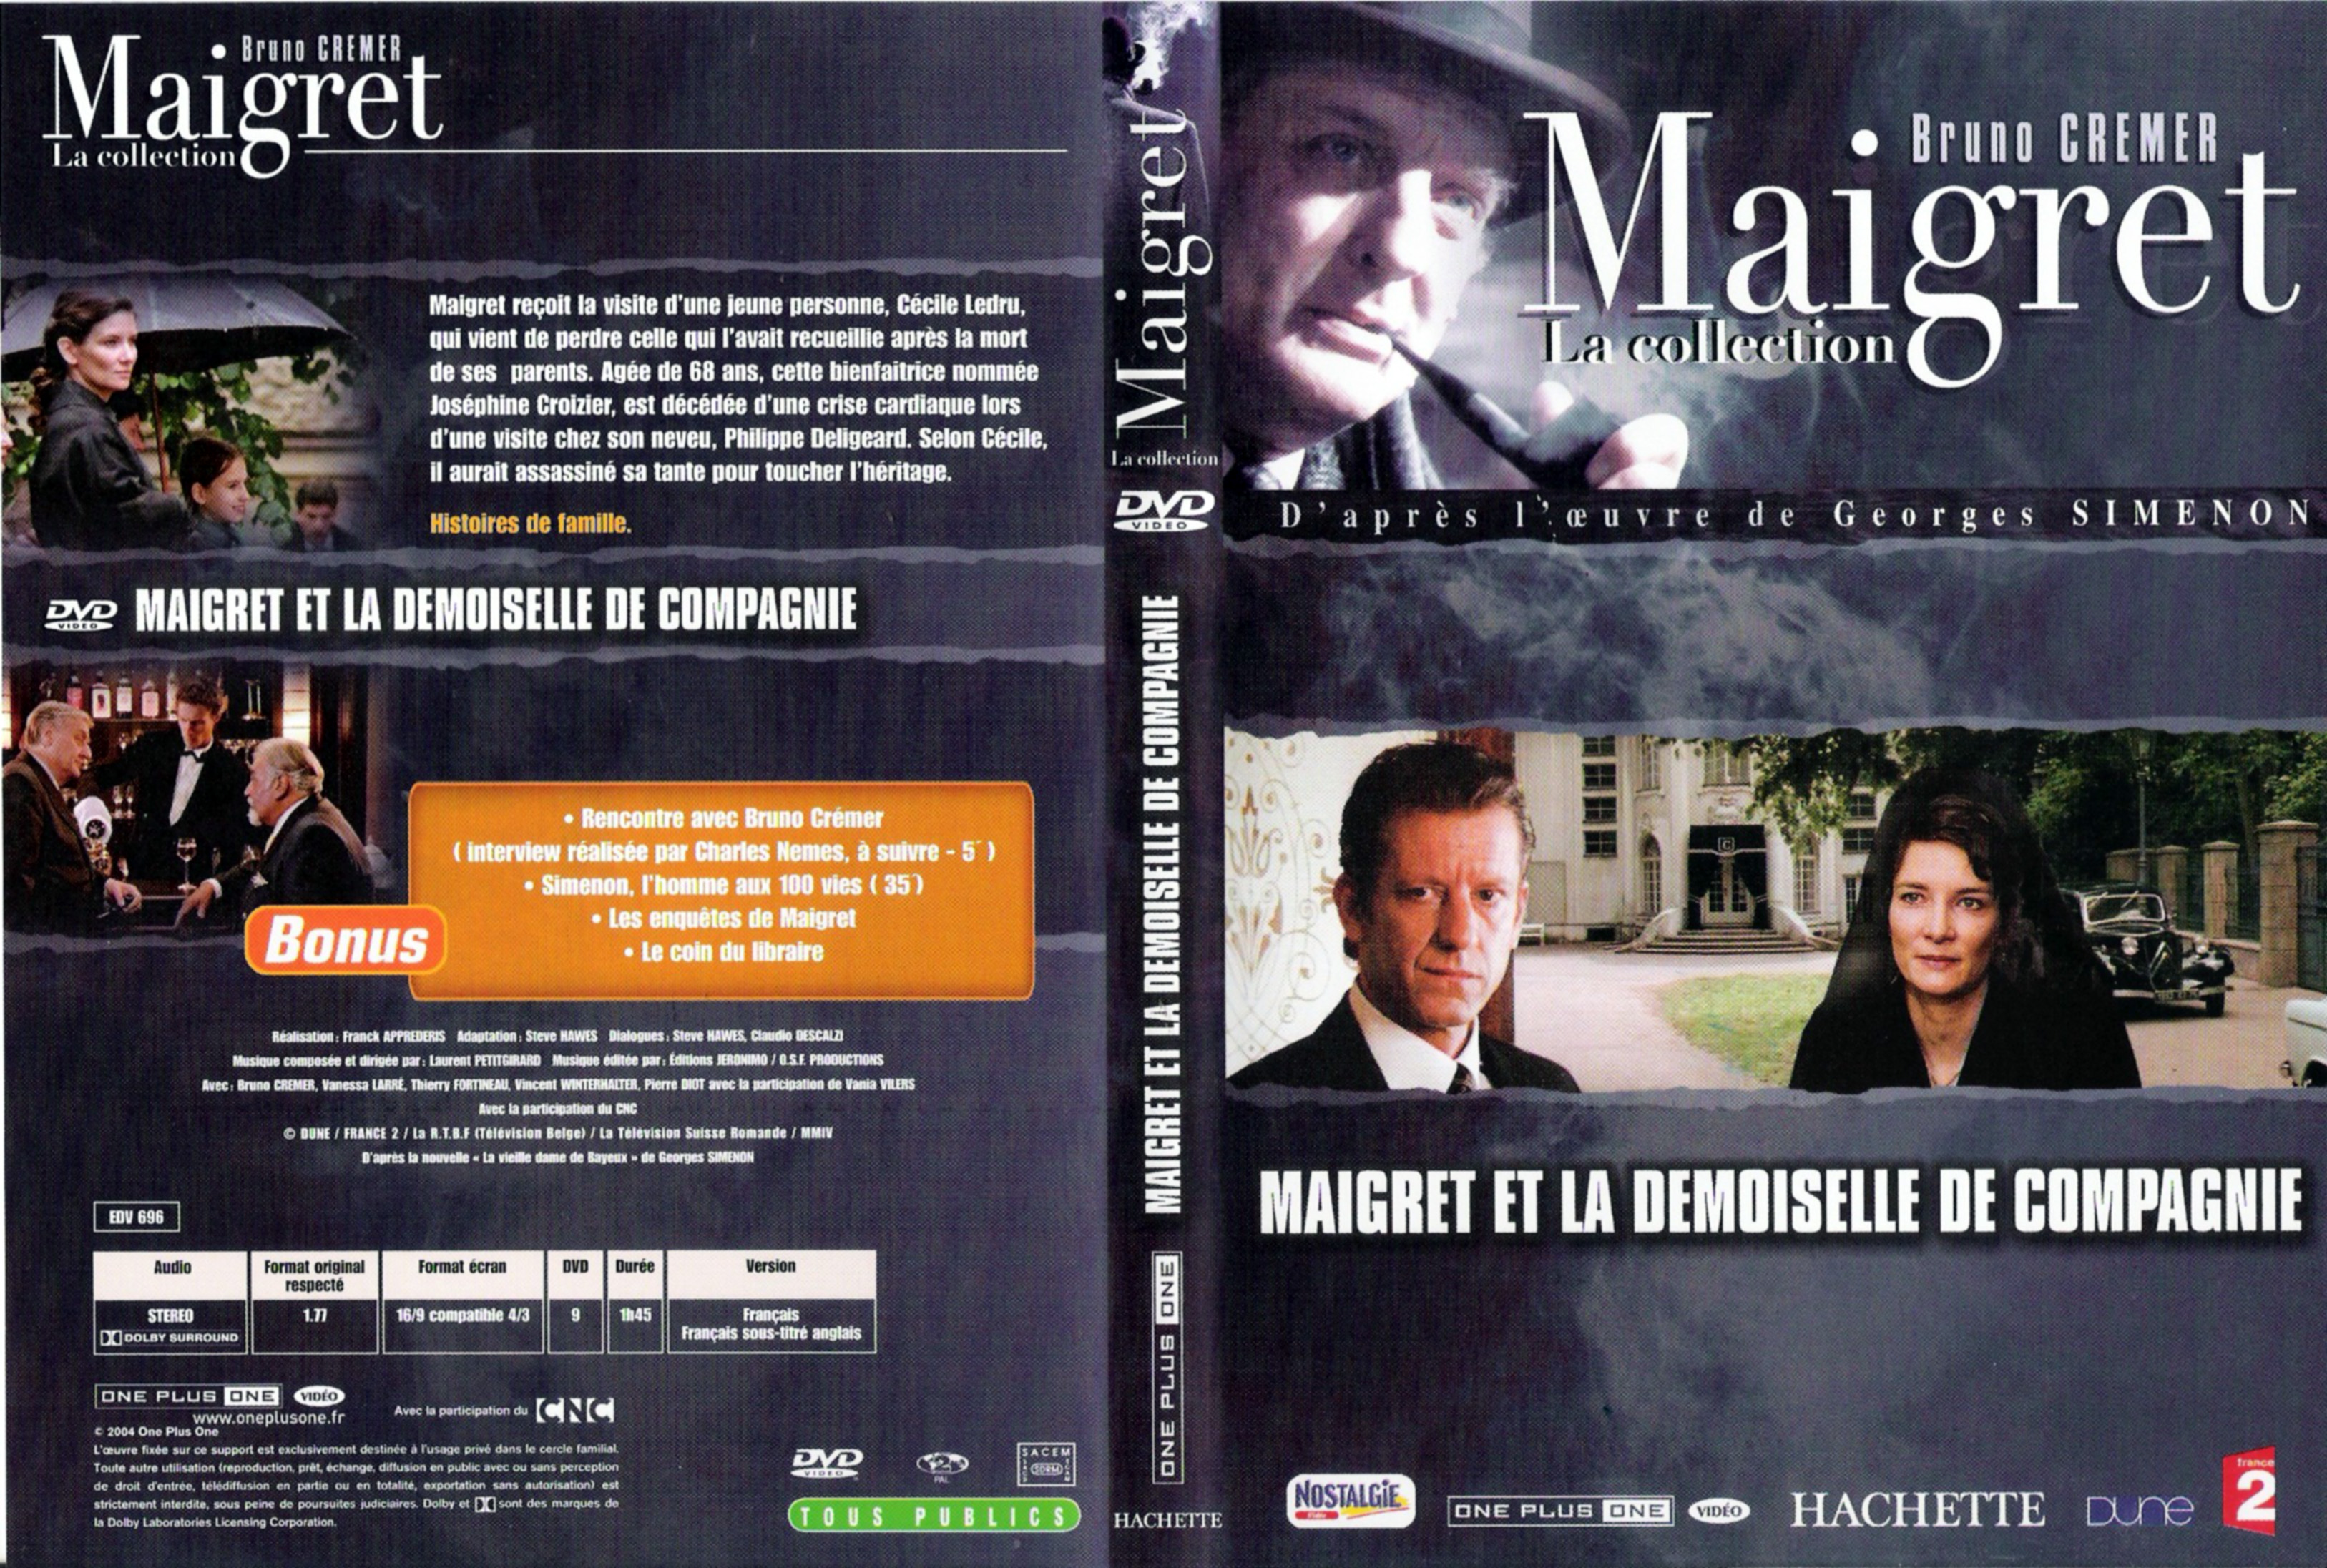 Jaquette DVD Maigret et la demoiselle de compagnie (Bruno Cremer)